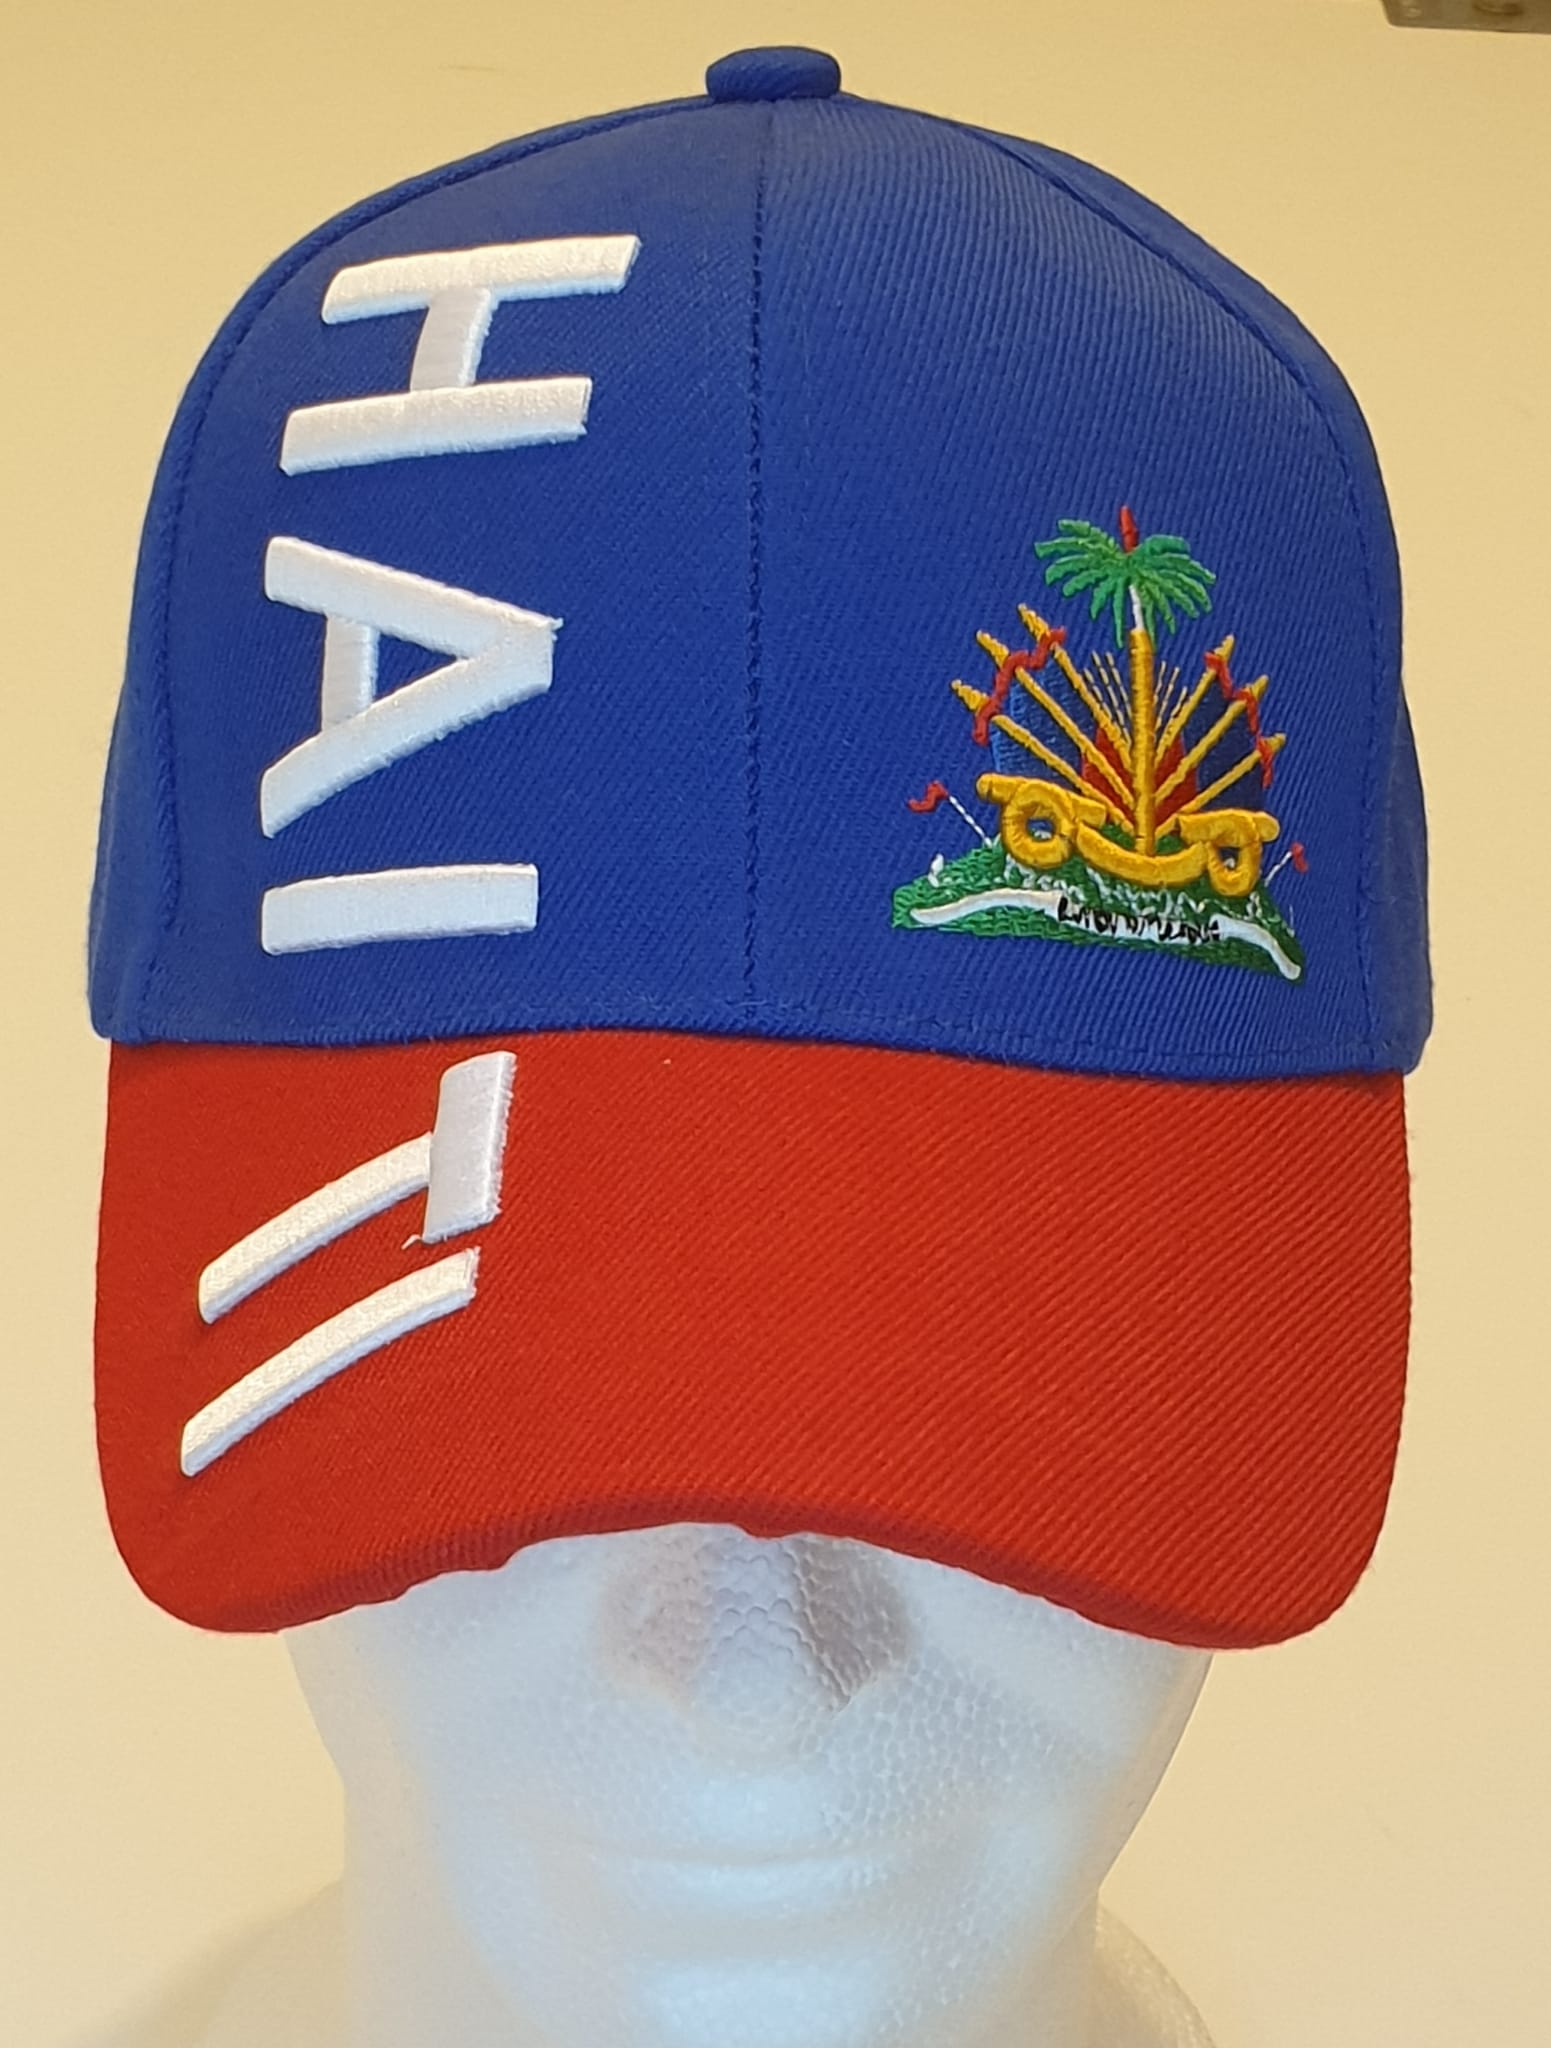 13Casquette Haïti. Casquette Base-ball. Casquette de sport Hip Hop en coton acrylique. H & F. Broderie et drapeau Haïti rouge. Scratch réglable bleuRouge. Taille unique 15€